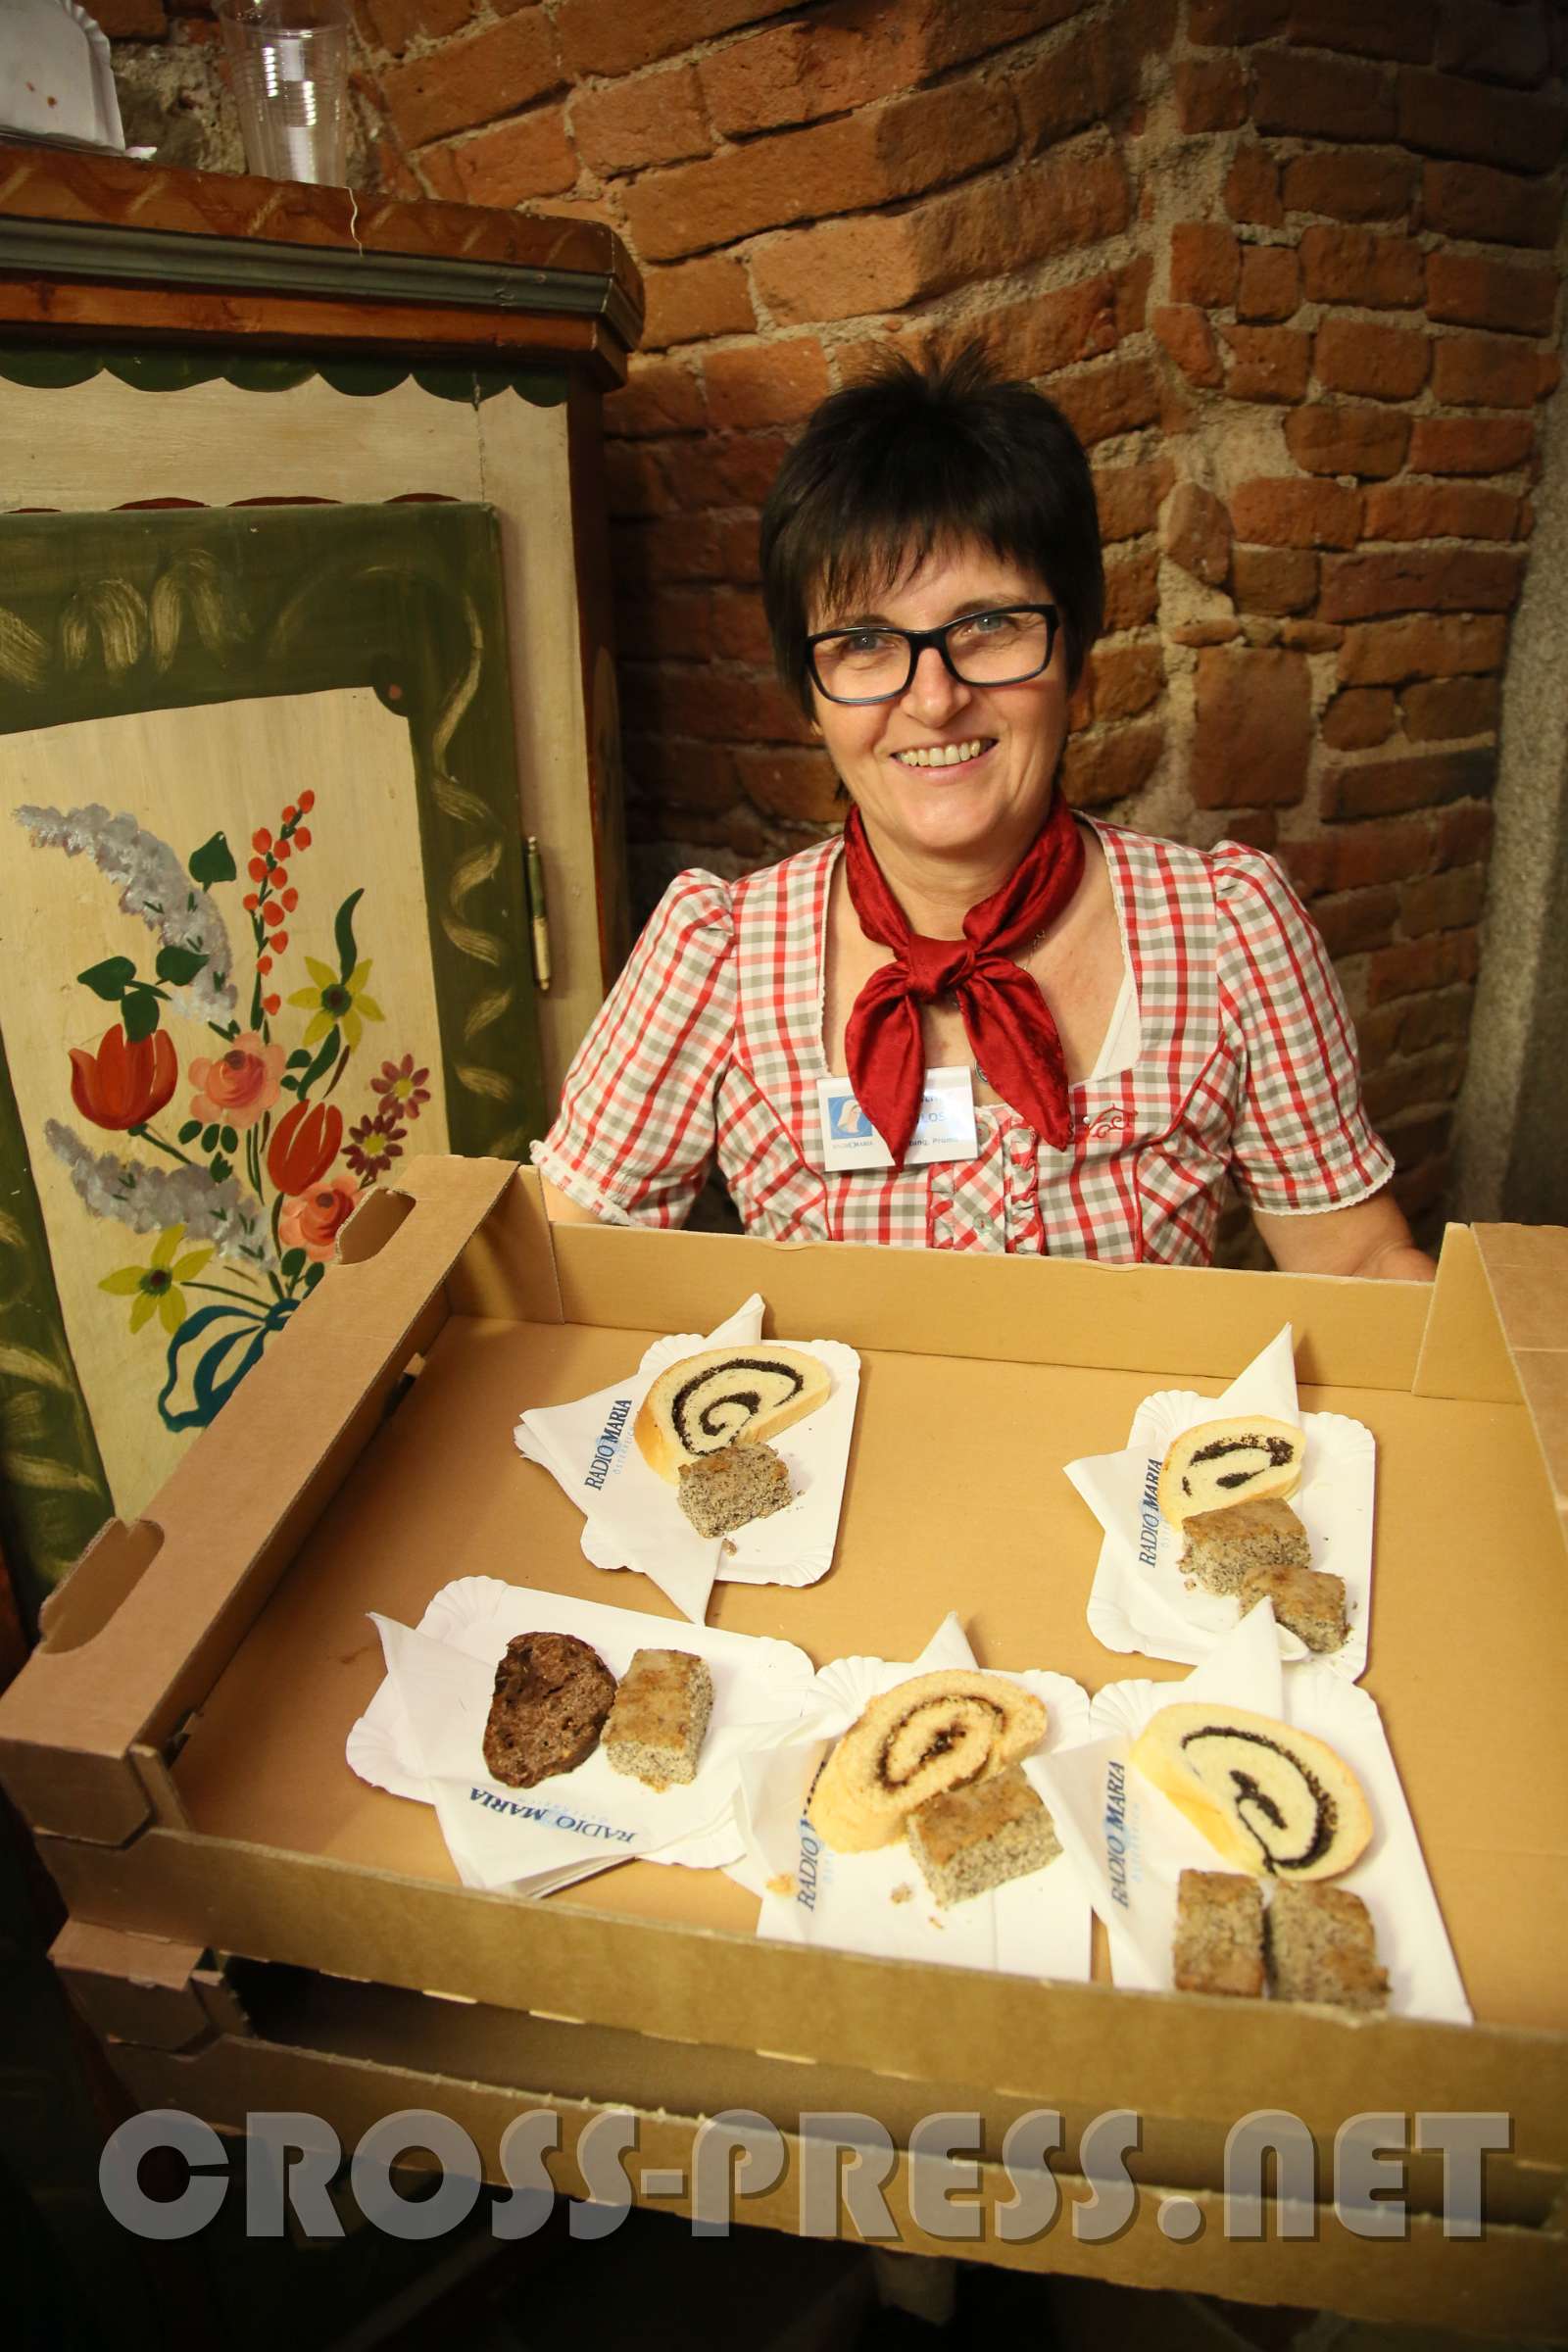 JahresWallfahrt von Radio Maria Austria Christine Heilos hat köstliche Mehlspeisen anzubieten.